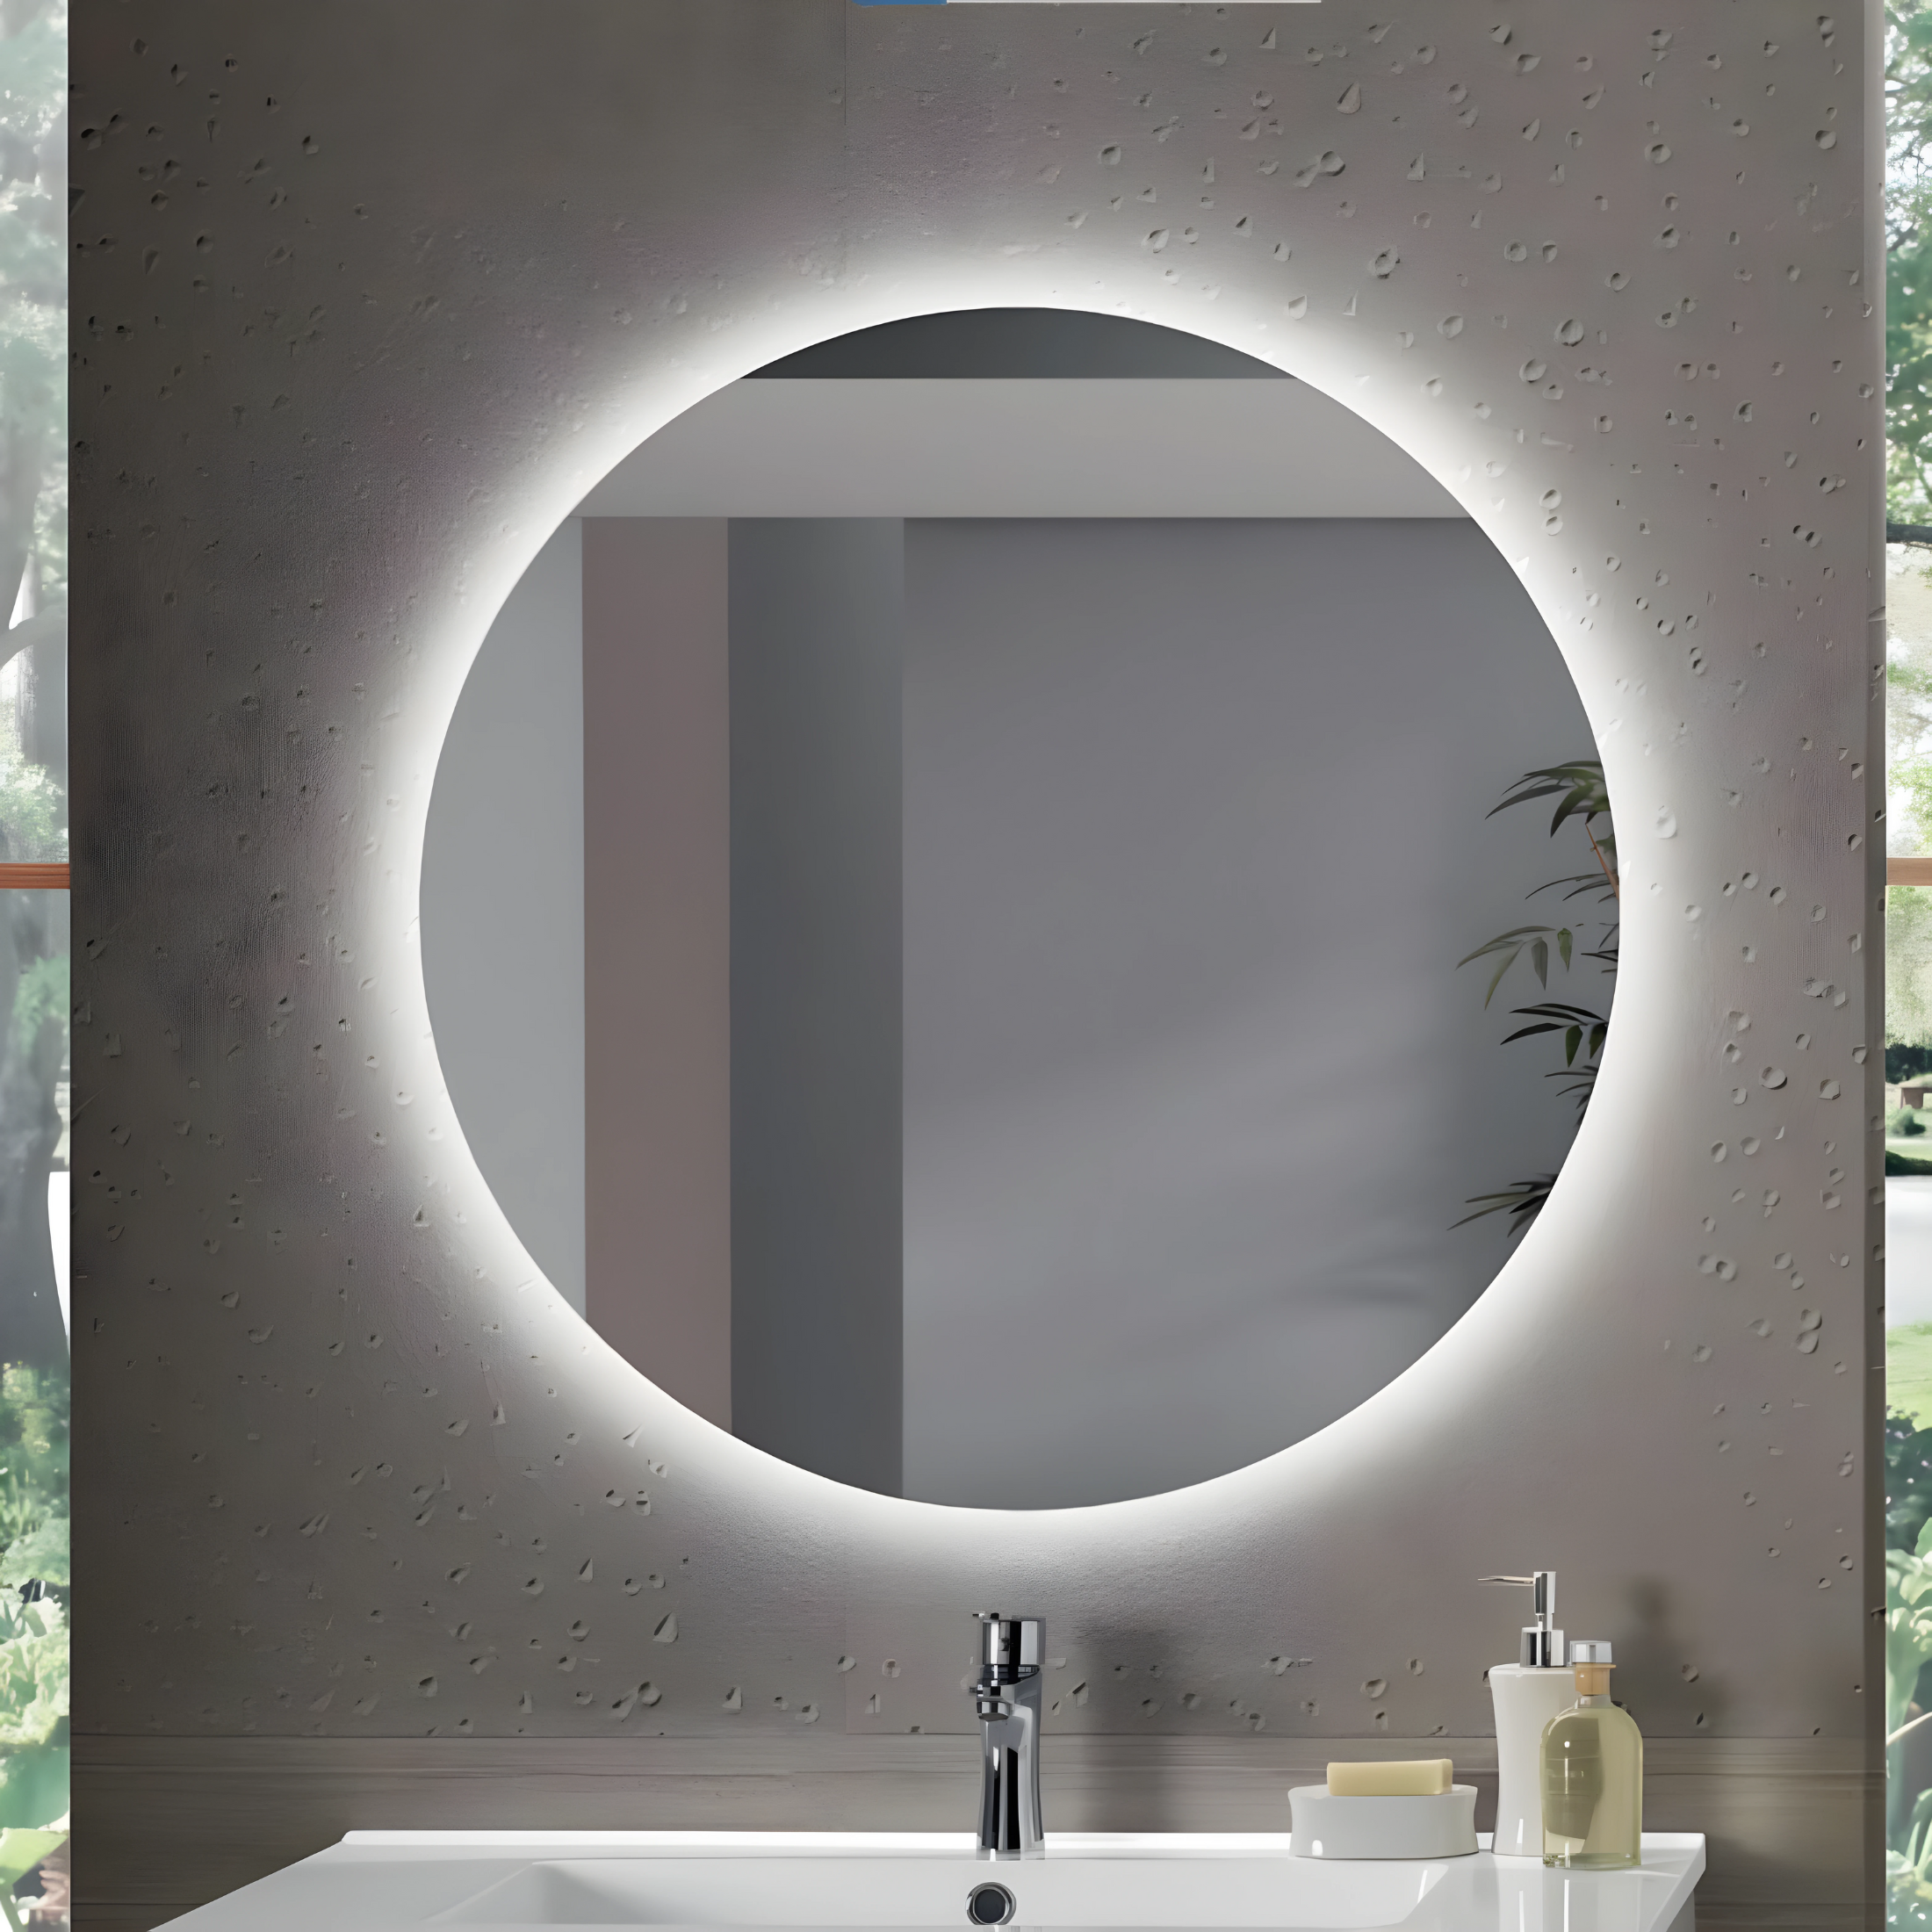 Meuble de salle de bain suspendu "Mixi l" 2 colonnes 2 vasques 2 plateaux miroir LED